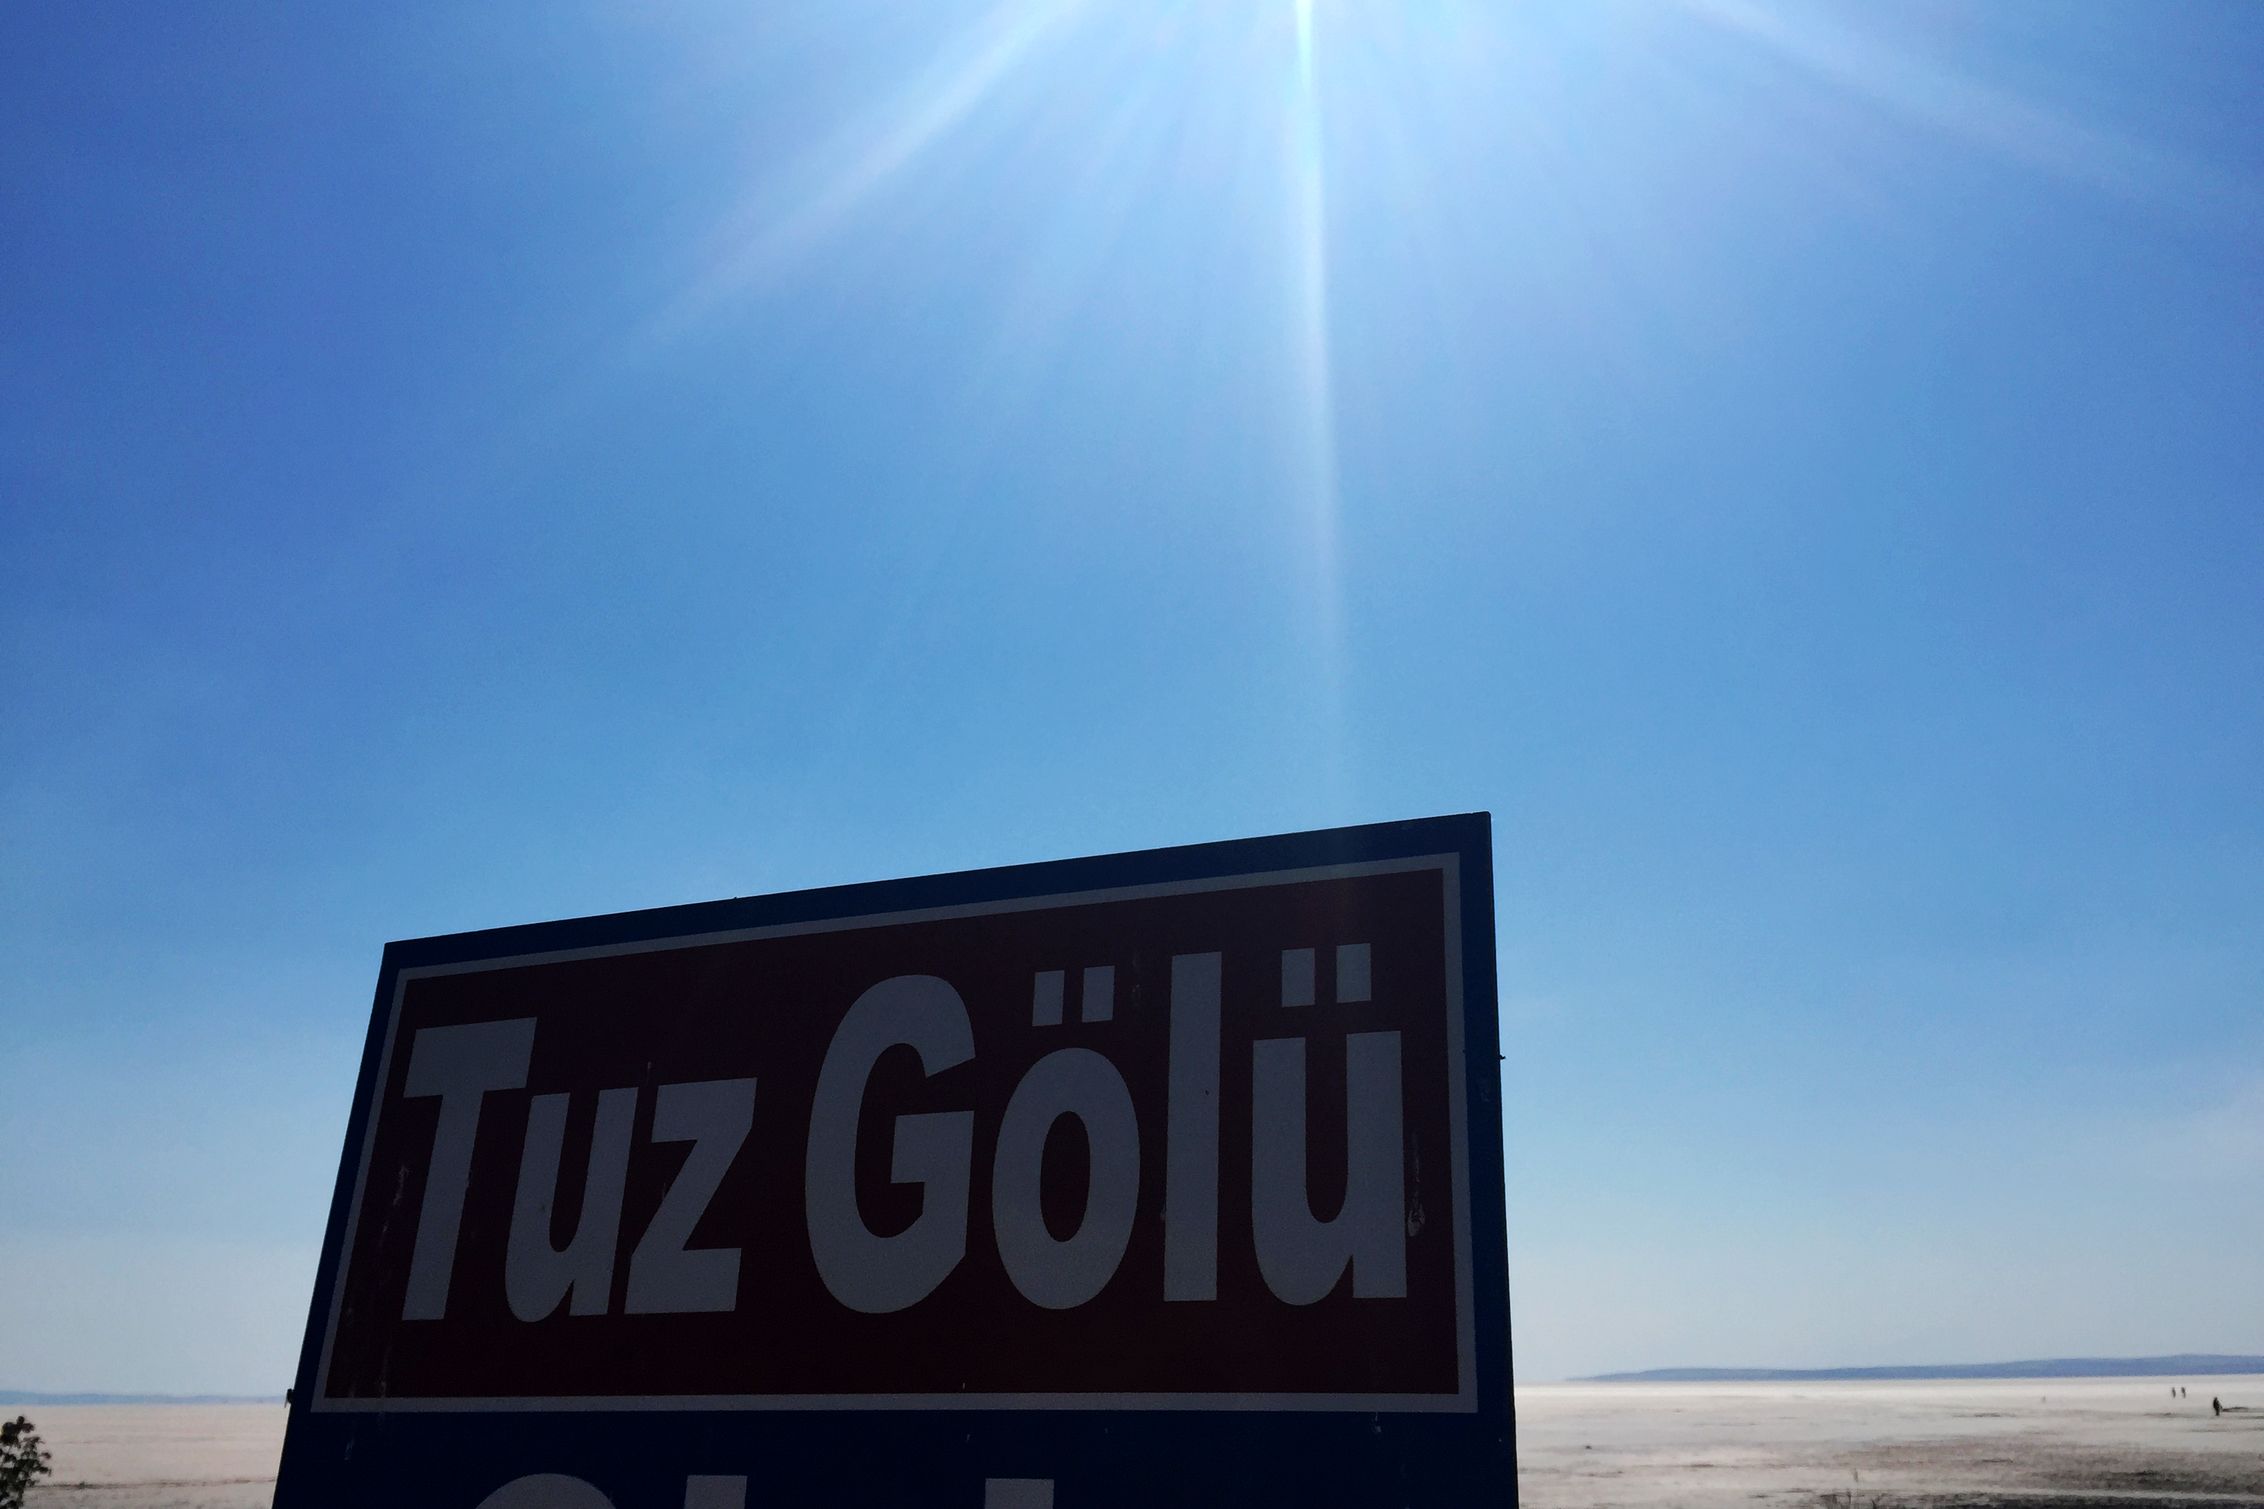 因为实在太向往 玻利维亚 的“天空之境”，所以我们在土国行程中加入了图兹湖-号称 土耳其 的“天空之